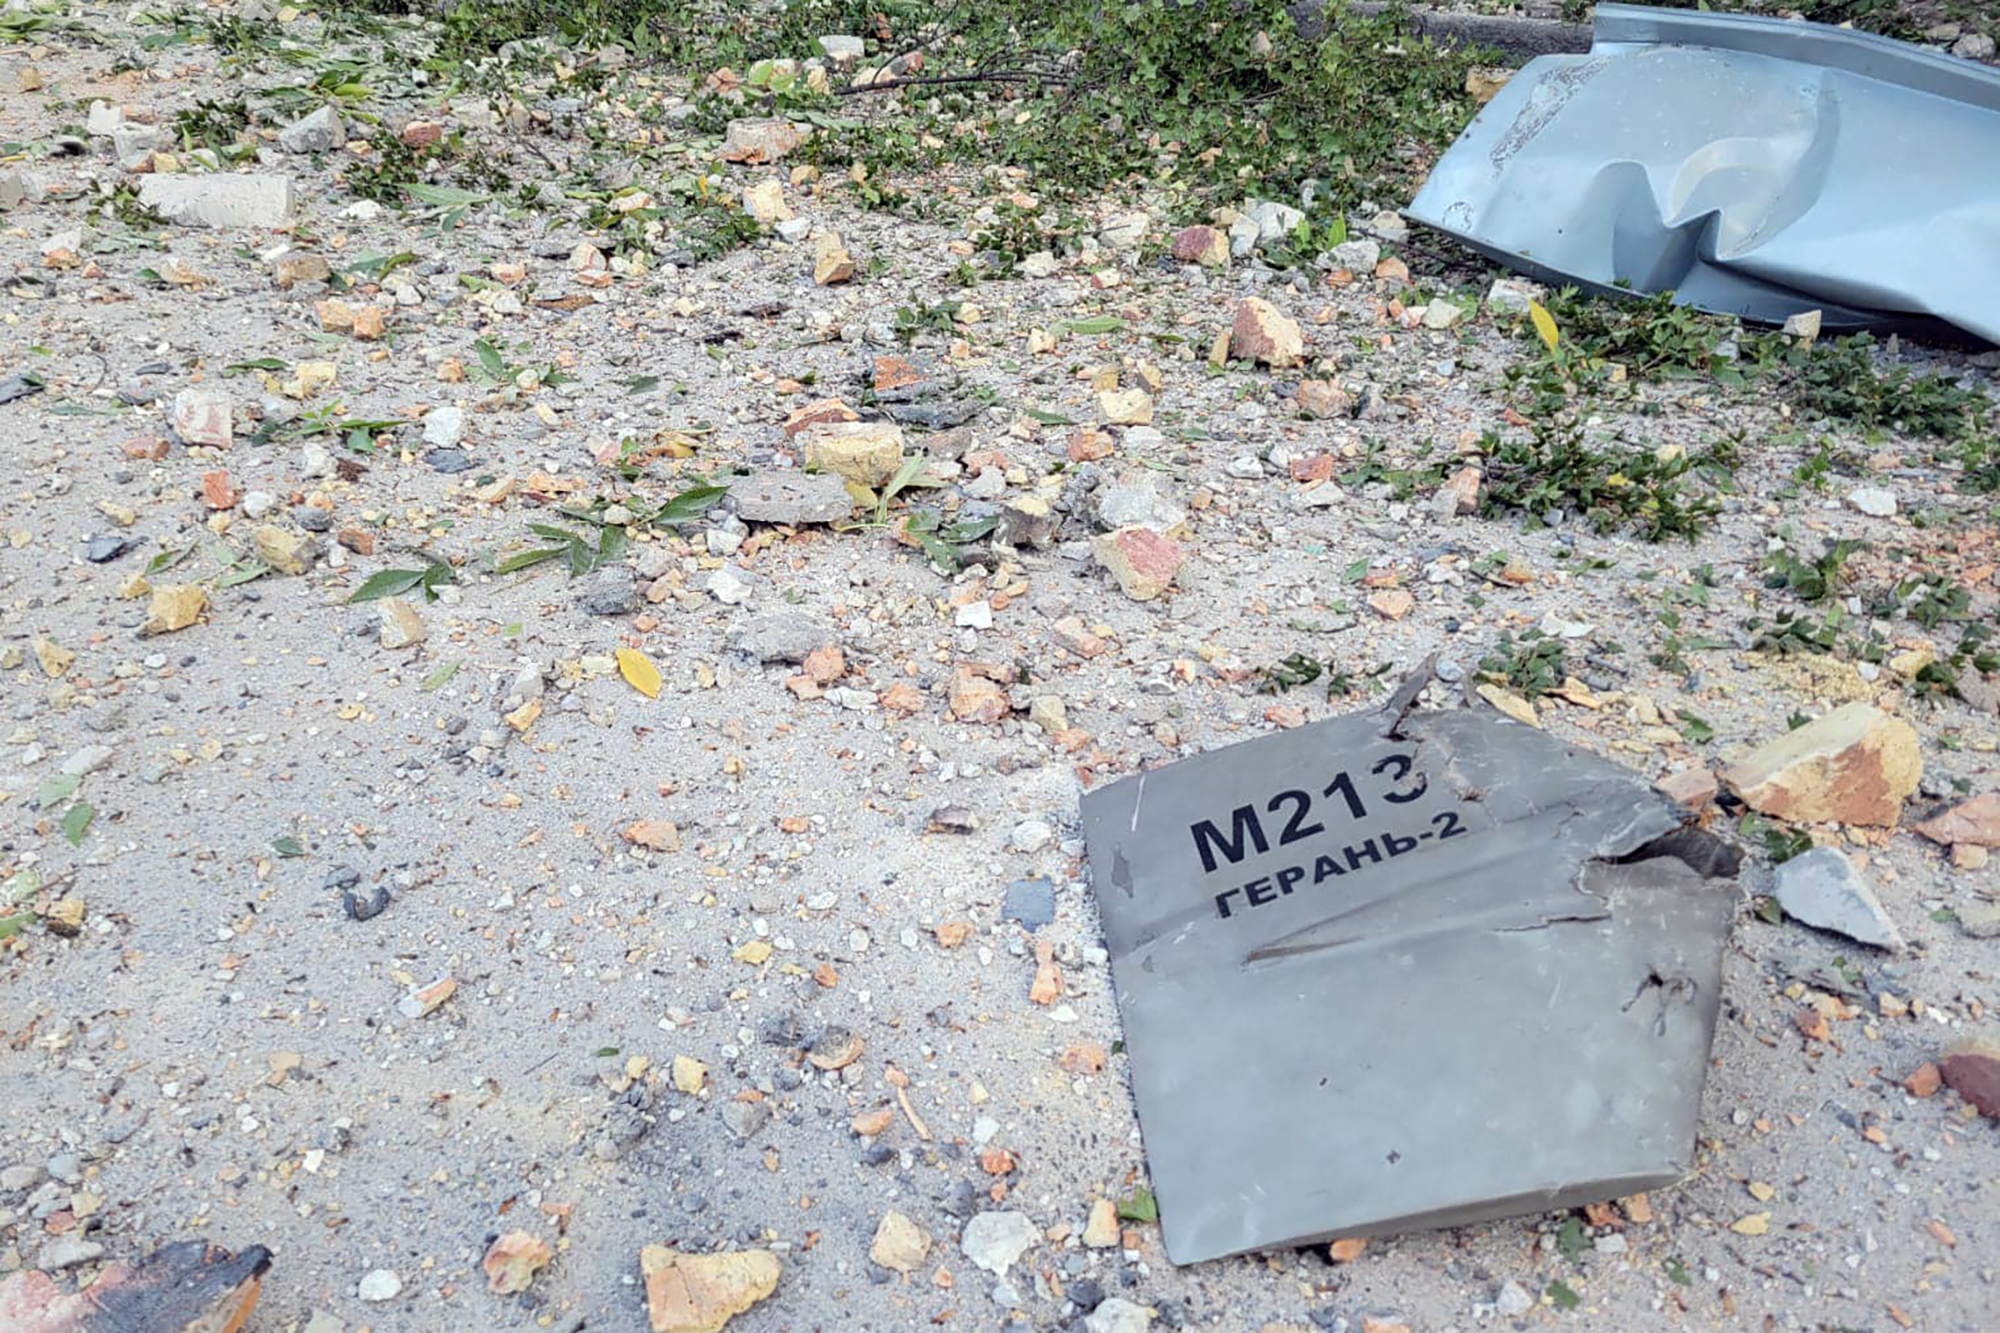 Bild der ukrainischen Armee, das die Überreste einer iranischen Kamikaze-Drohne zeigen soll